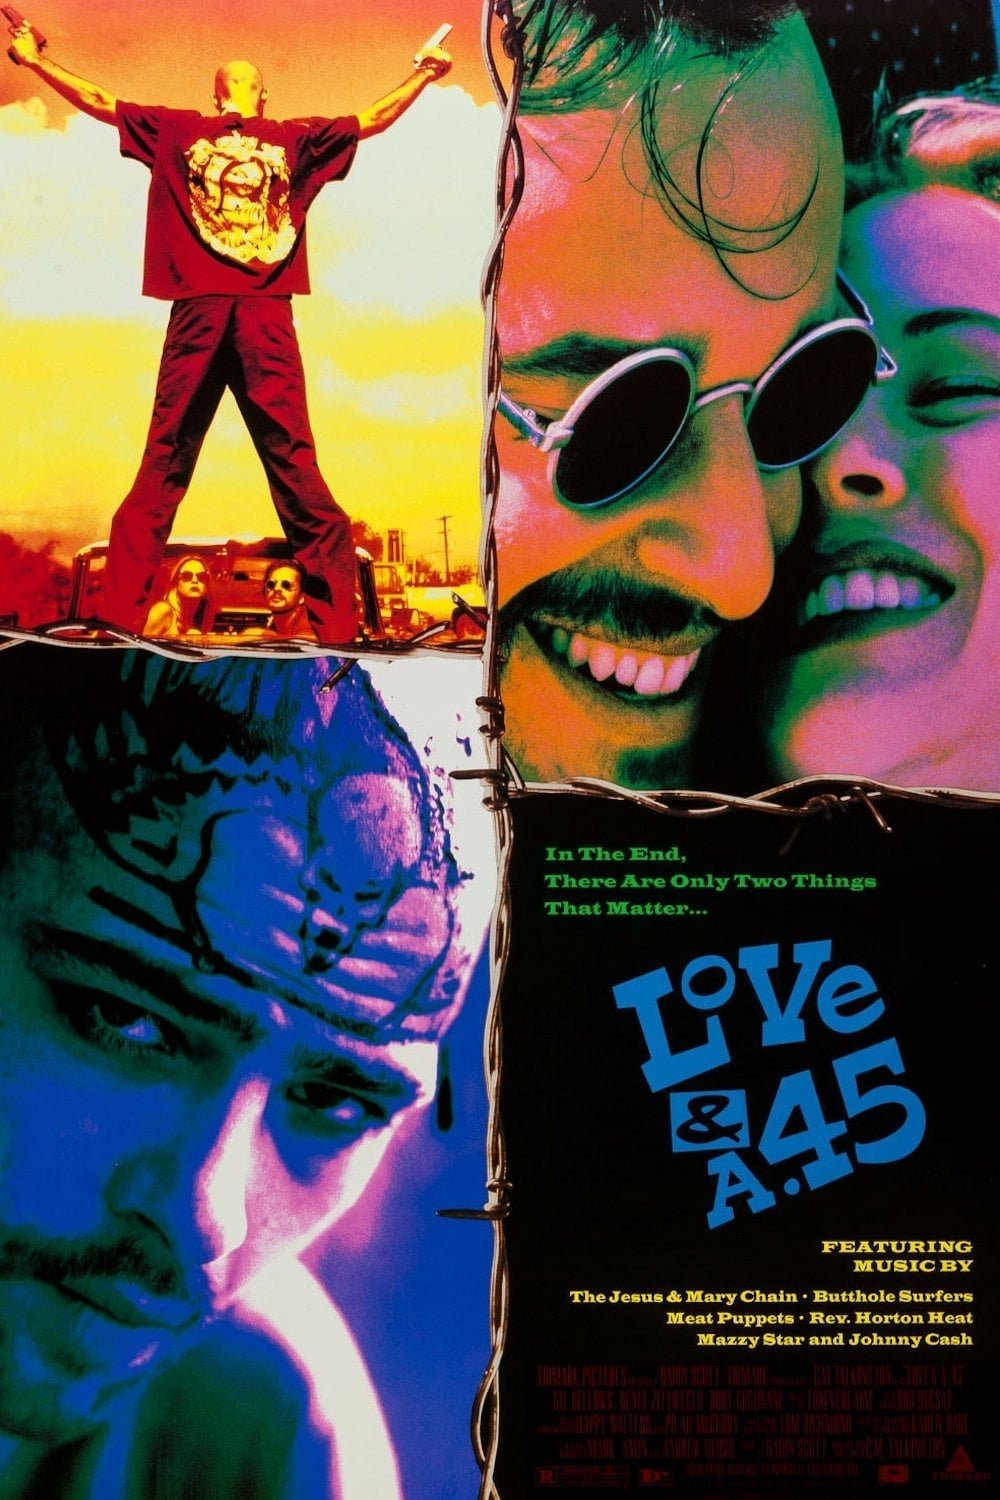 L'affiche du film Love and a .45